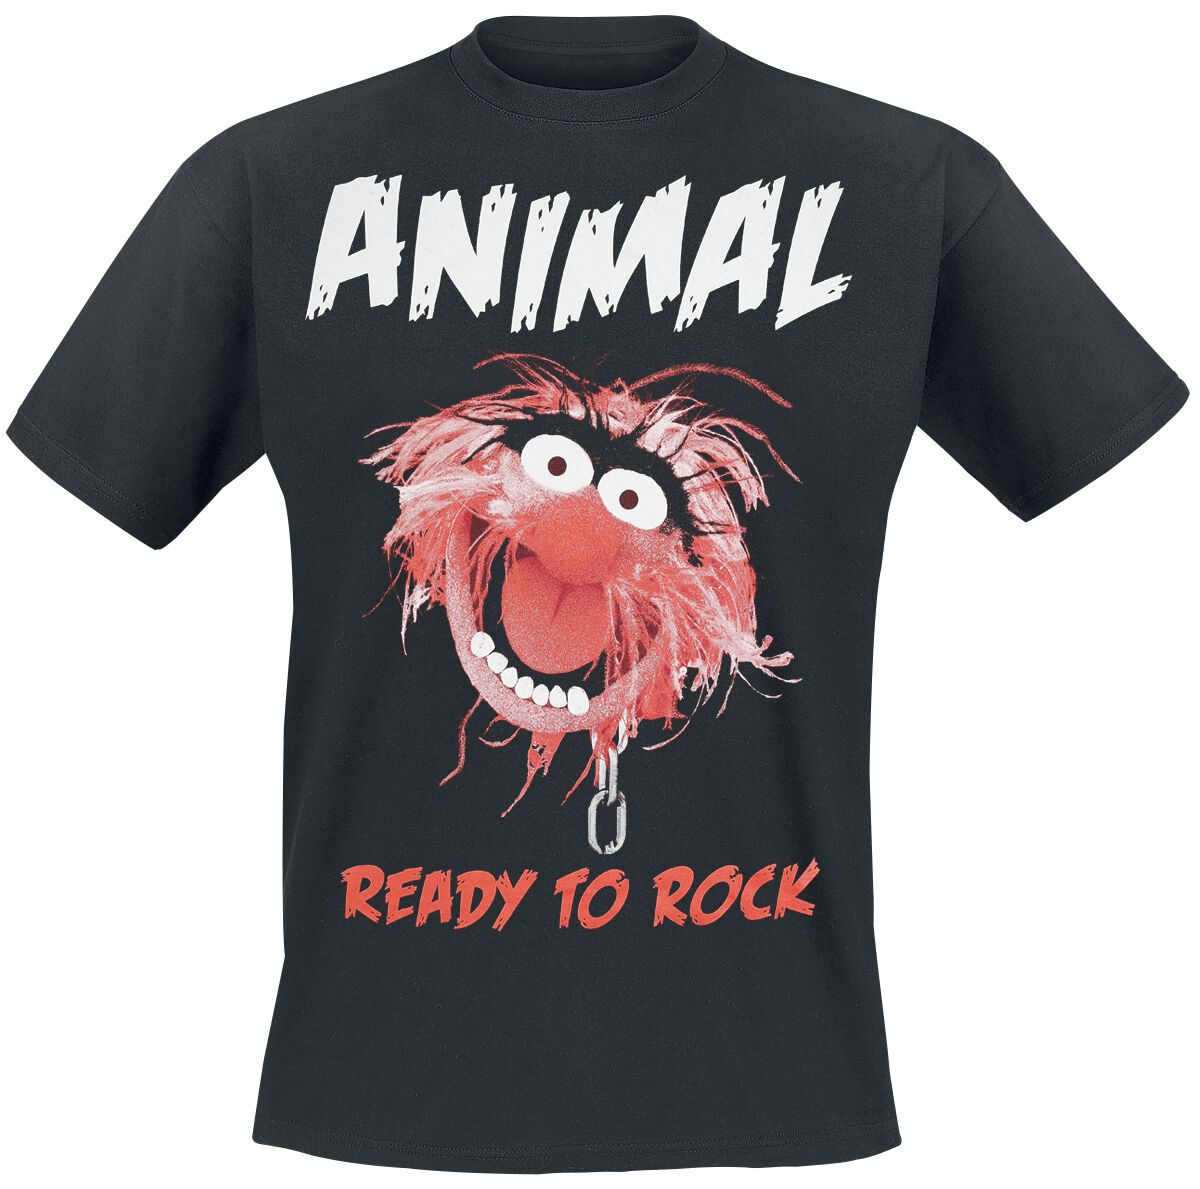 Die Muppets T-Shirt - Animal - Ready To Rock - S bis XXL - für Männer - Größe M - schwarz  - EMP exklusives Merchandise!